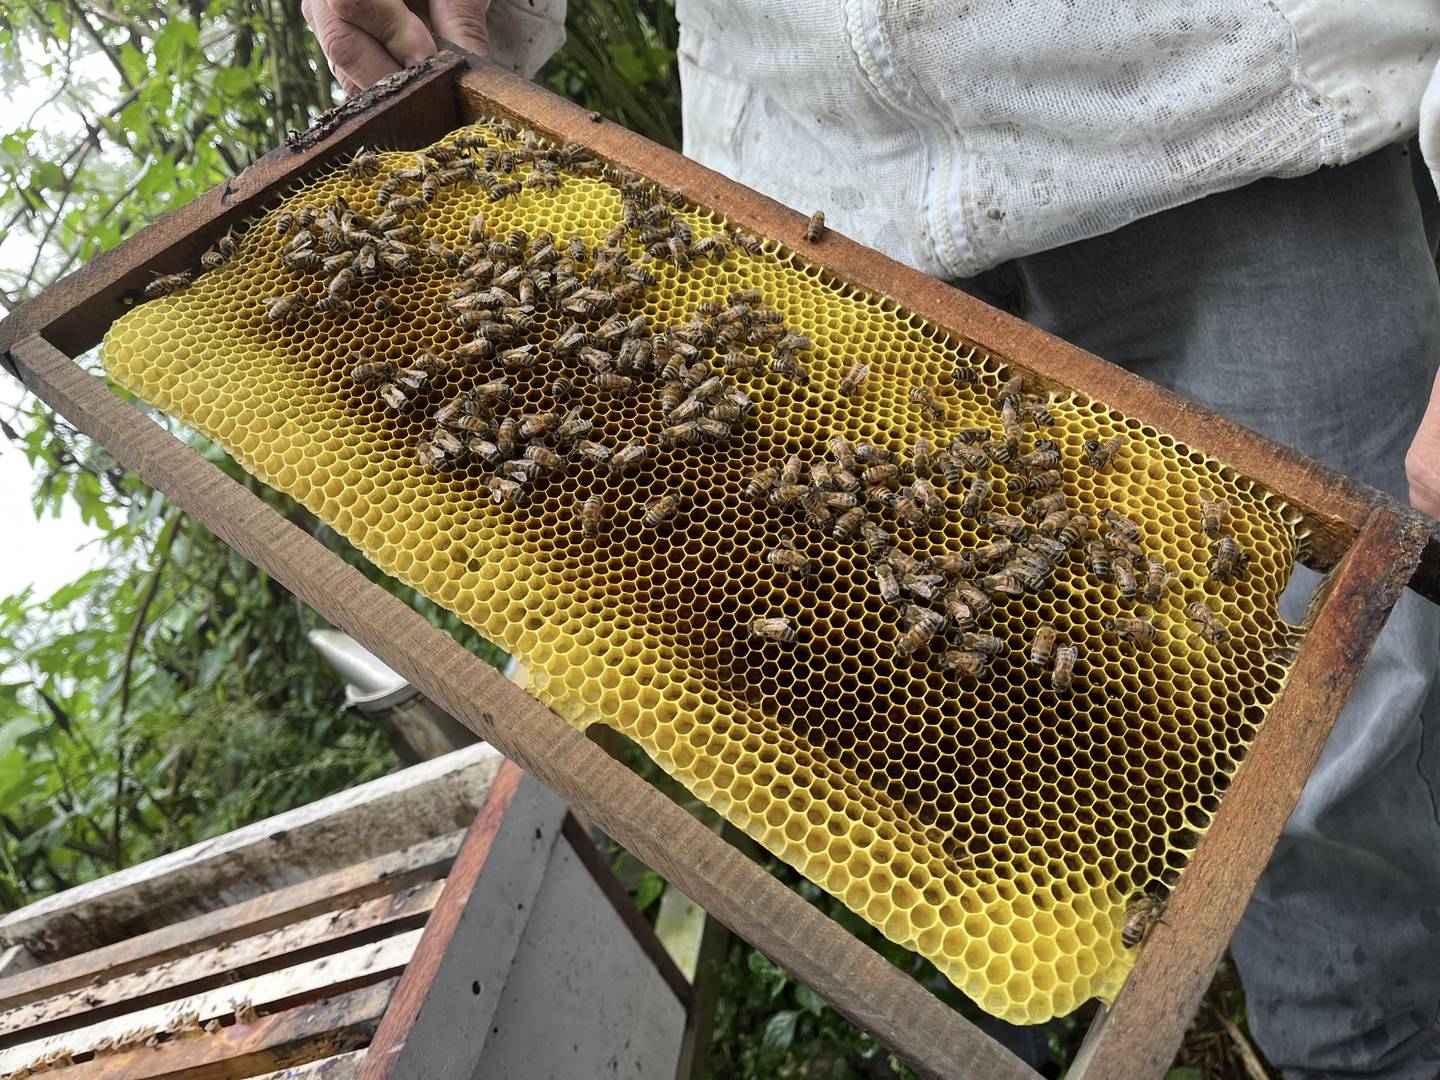 En una colmena típica de apicultor, conviven tres castas de abejas melíferas: las reinas, las obreras y los zánganos. Fotografía: Juan Fernando Lara S.